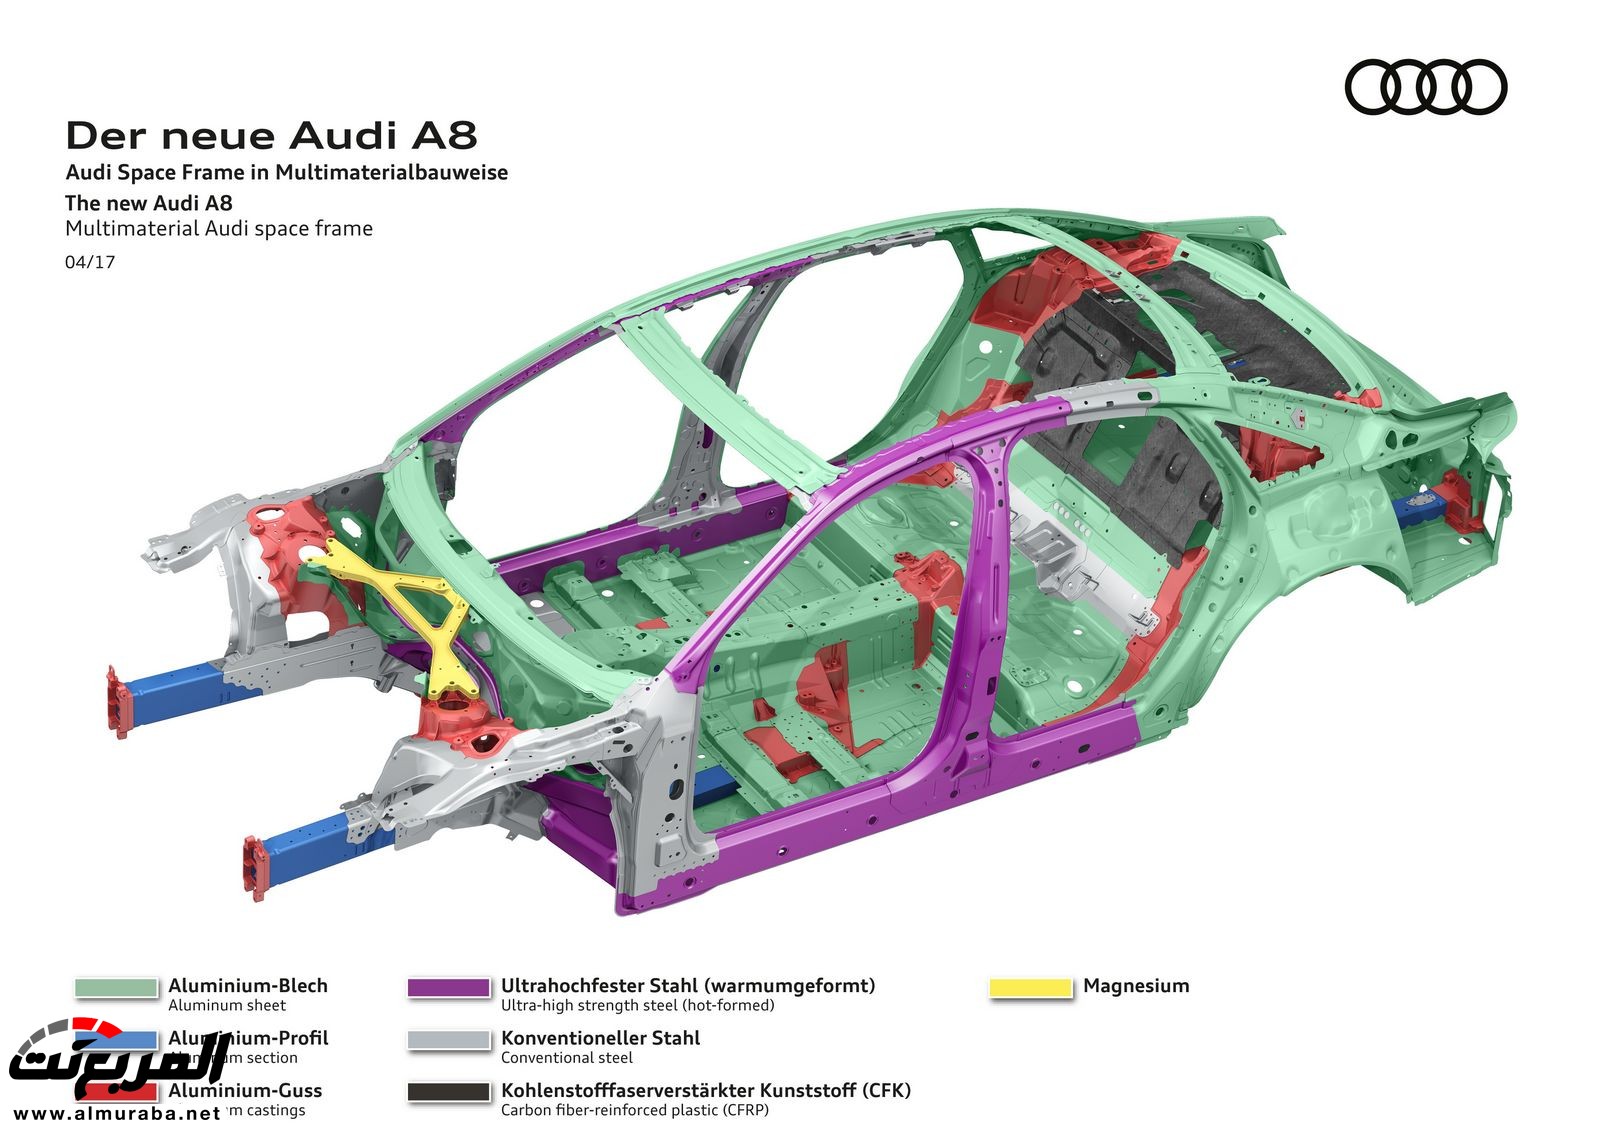 أودي A8 2018 الجديدة كلياً تكشف نفسها بتصميم وتقنيات متطورة "معلومات + 100 صورة" Audi A8 50